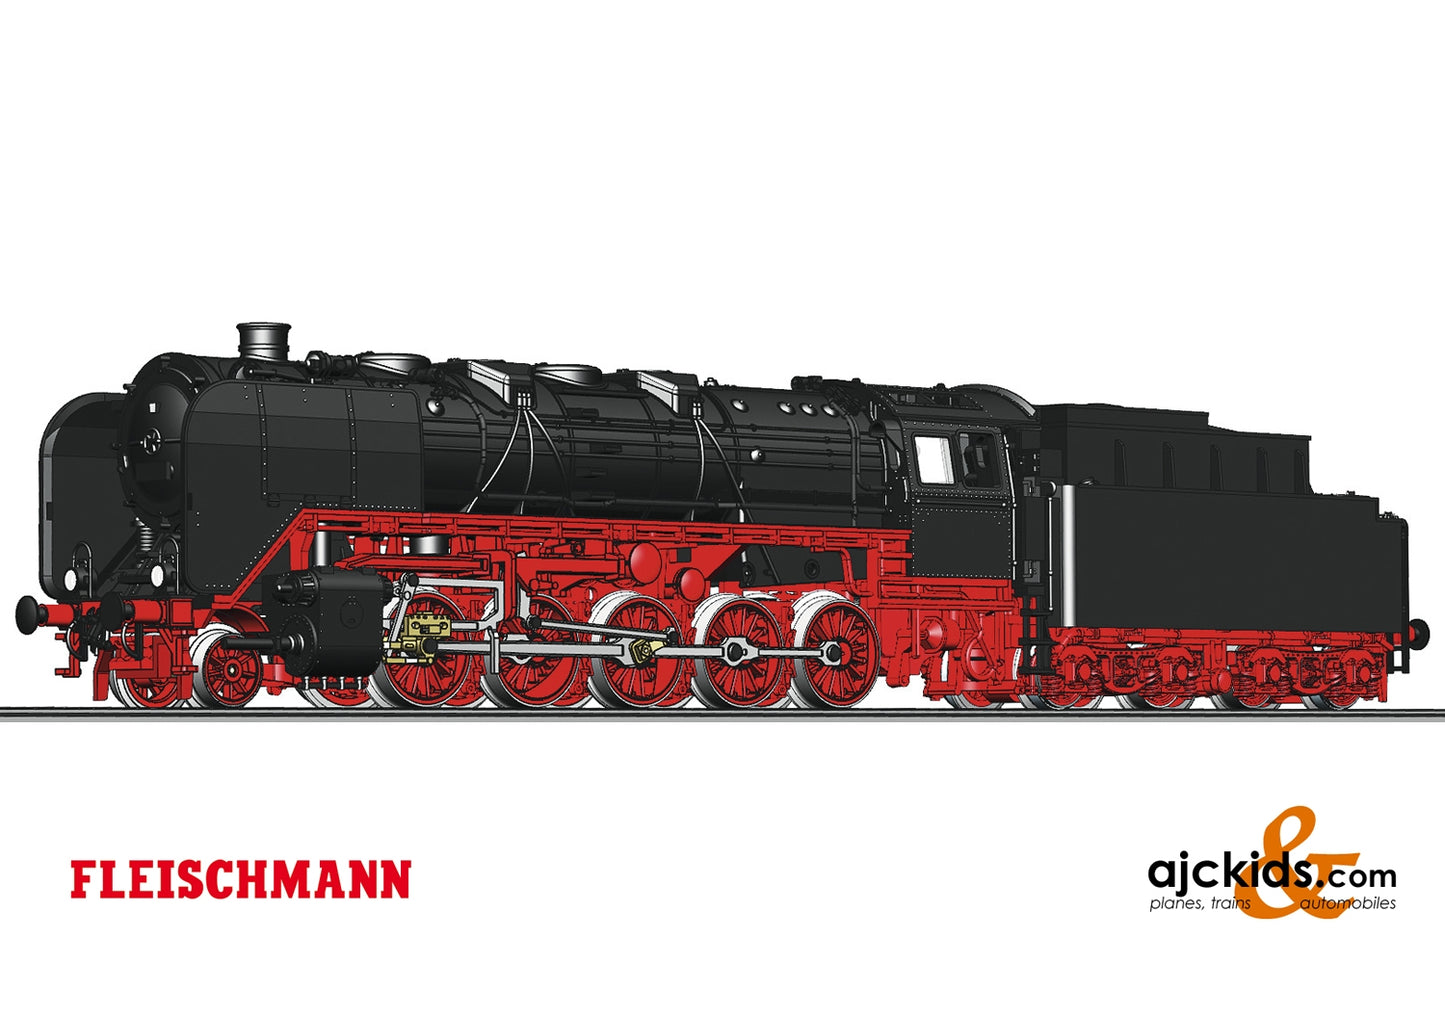 Fleischmann 714403 - Steam locomotive class 44